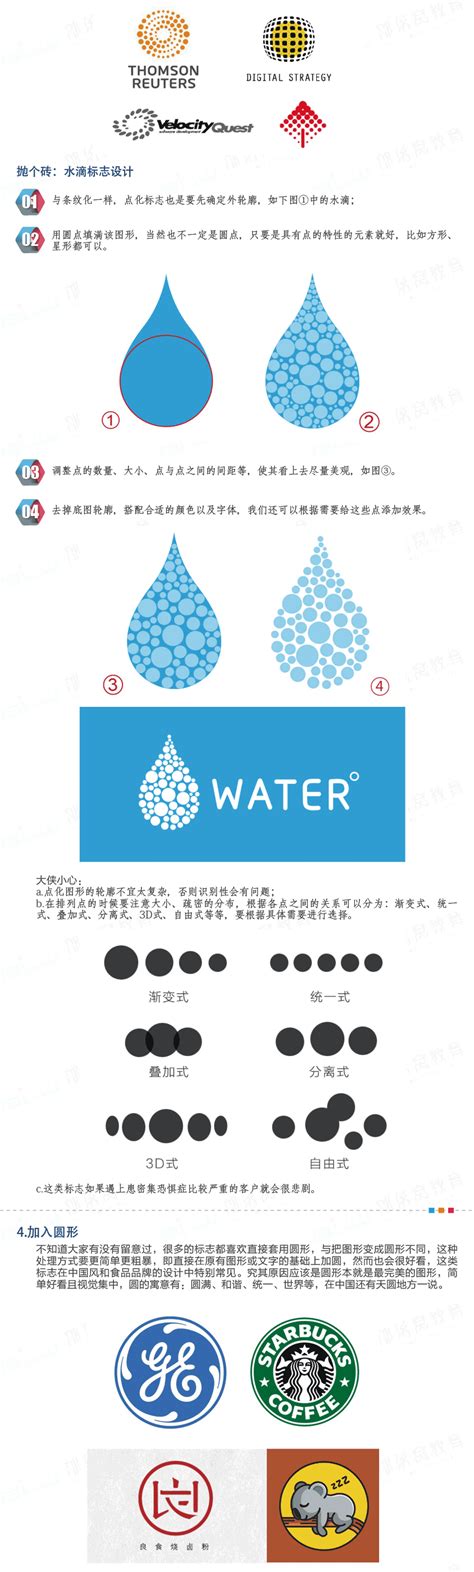 陈淑琴——茶知味logo设计-计算机信息学院